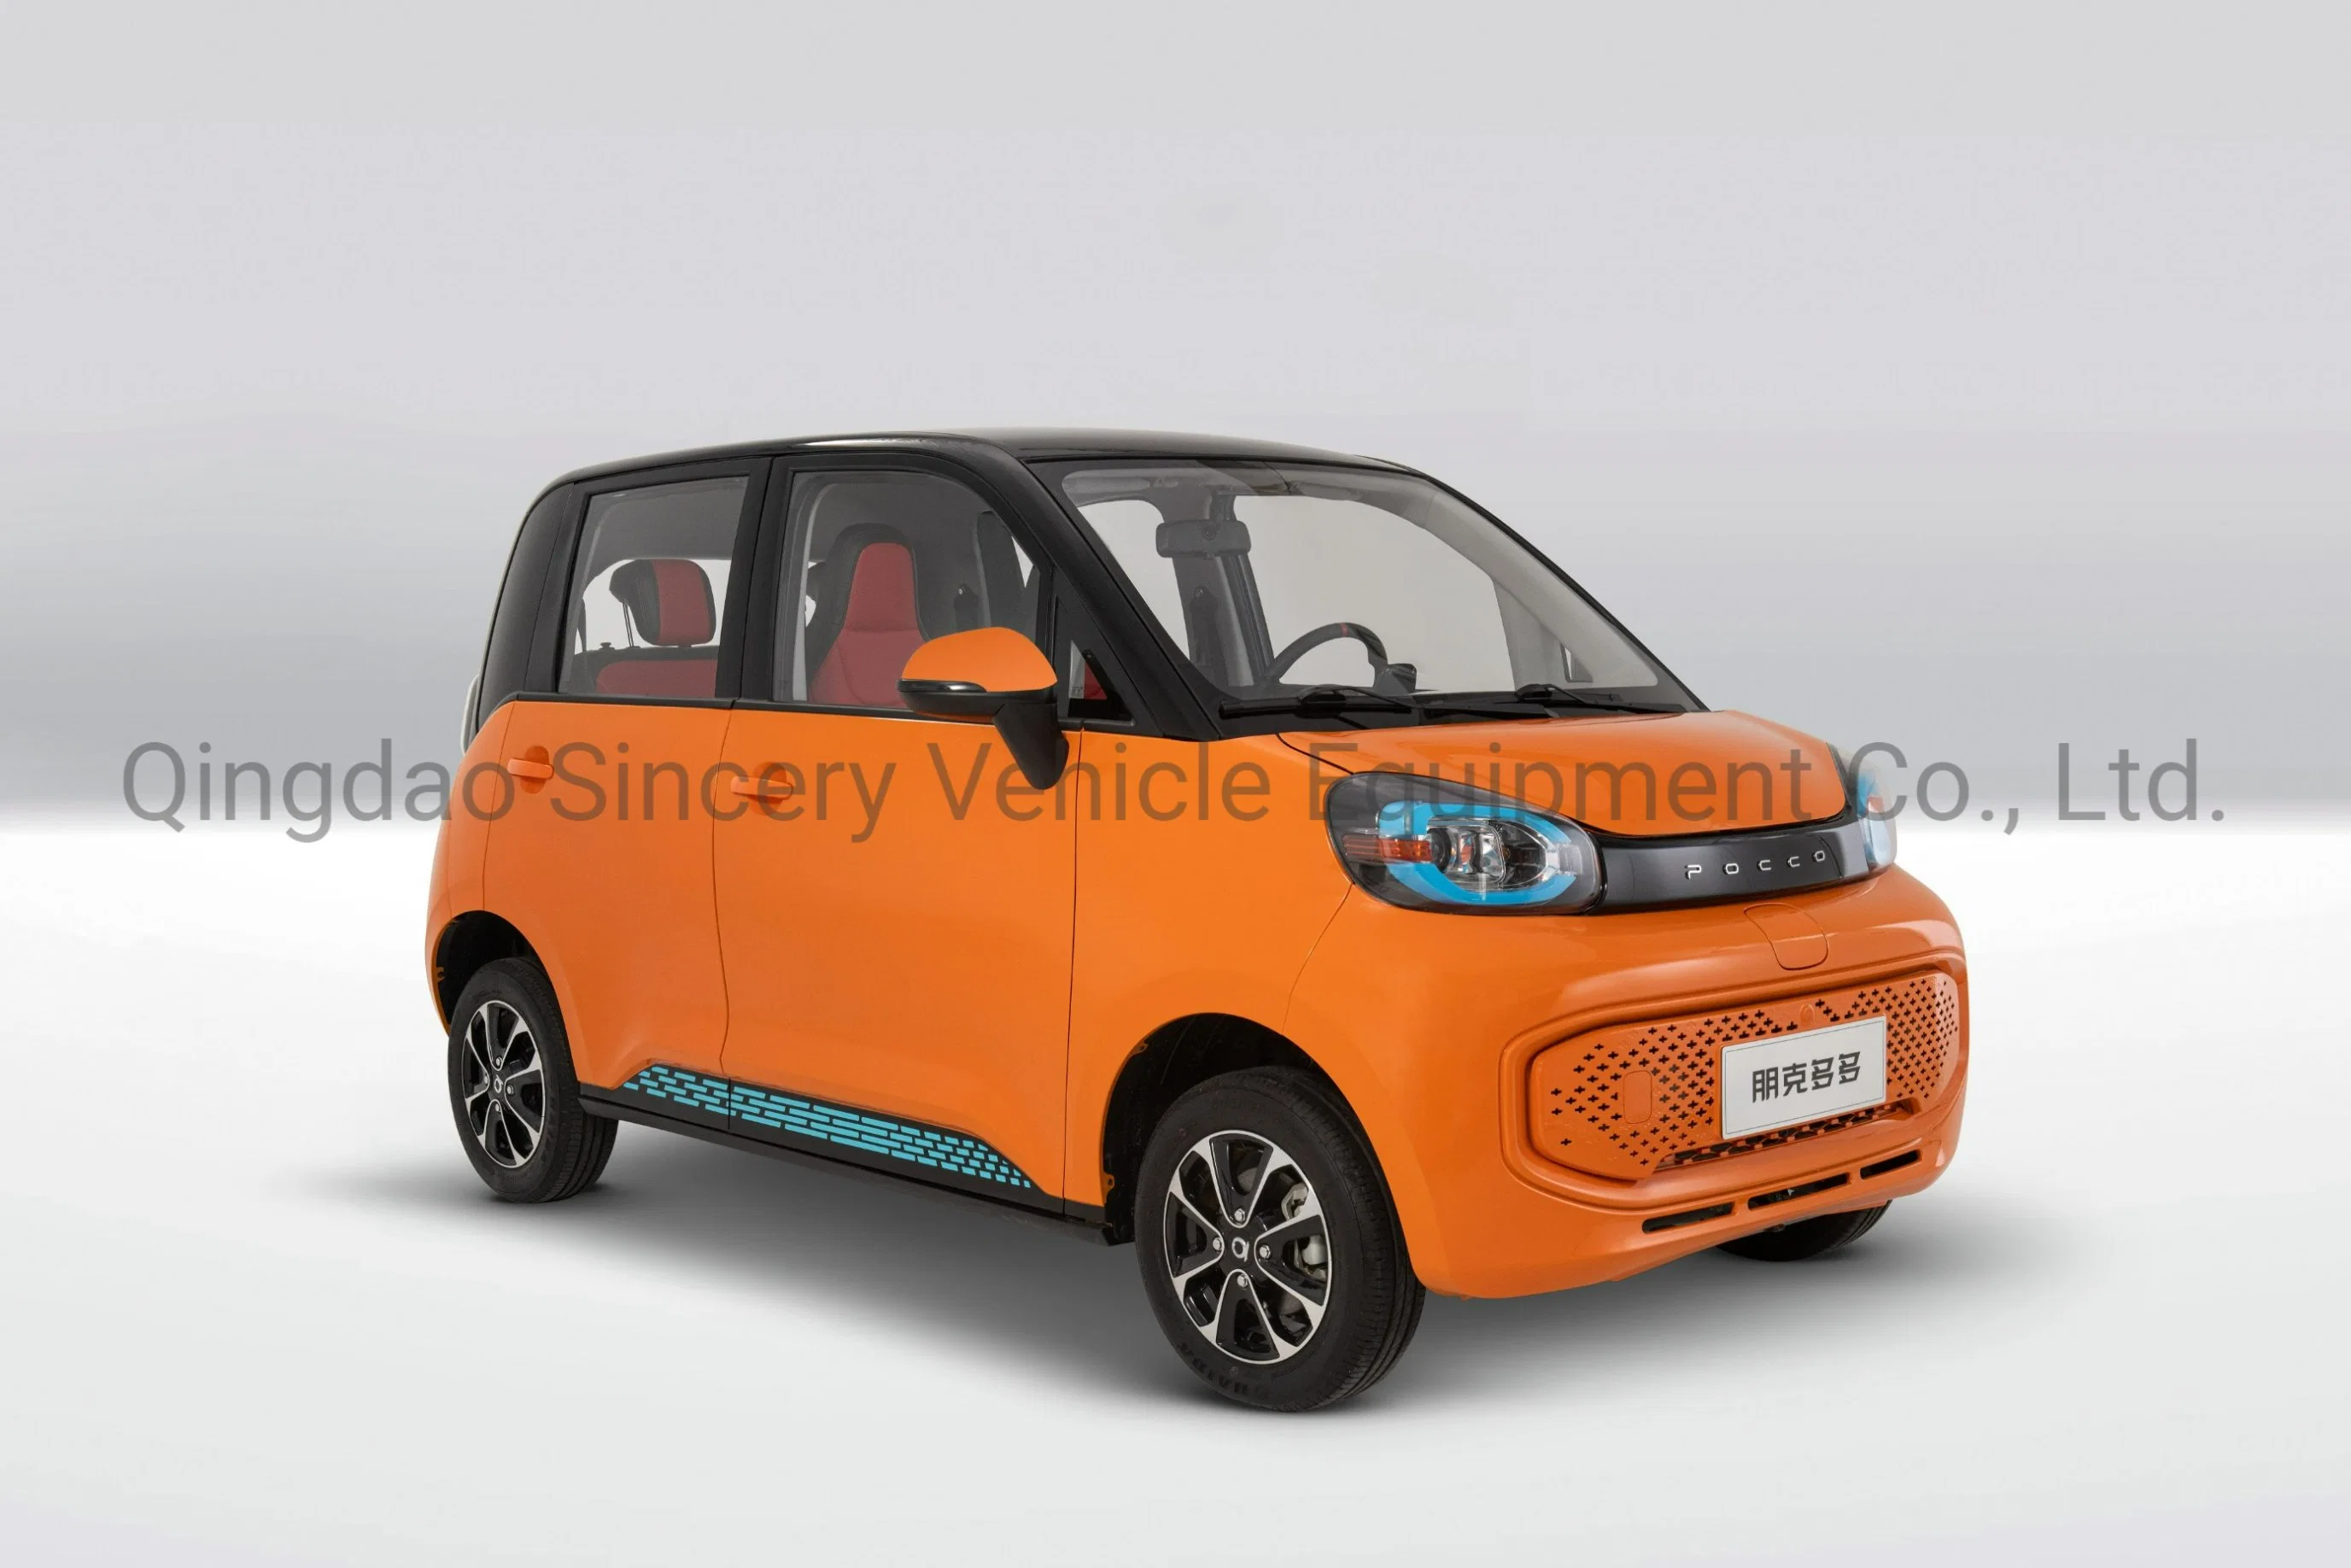 La Chine fabricant automobile solaire haute vitesse mini-voiturette mini voiture électrique EV Véhicule électrique Automobile électrique Bev véhicule batterie de voiture de batterie de voiture voitures solaires